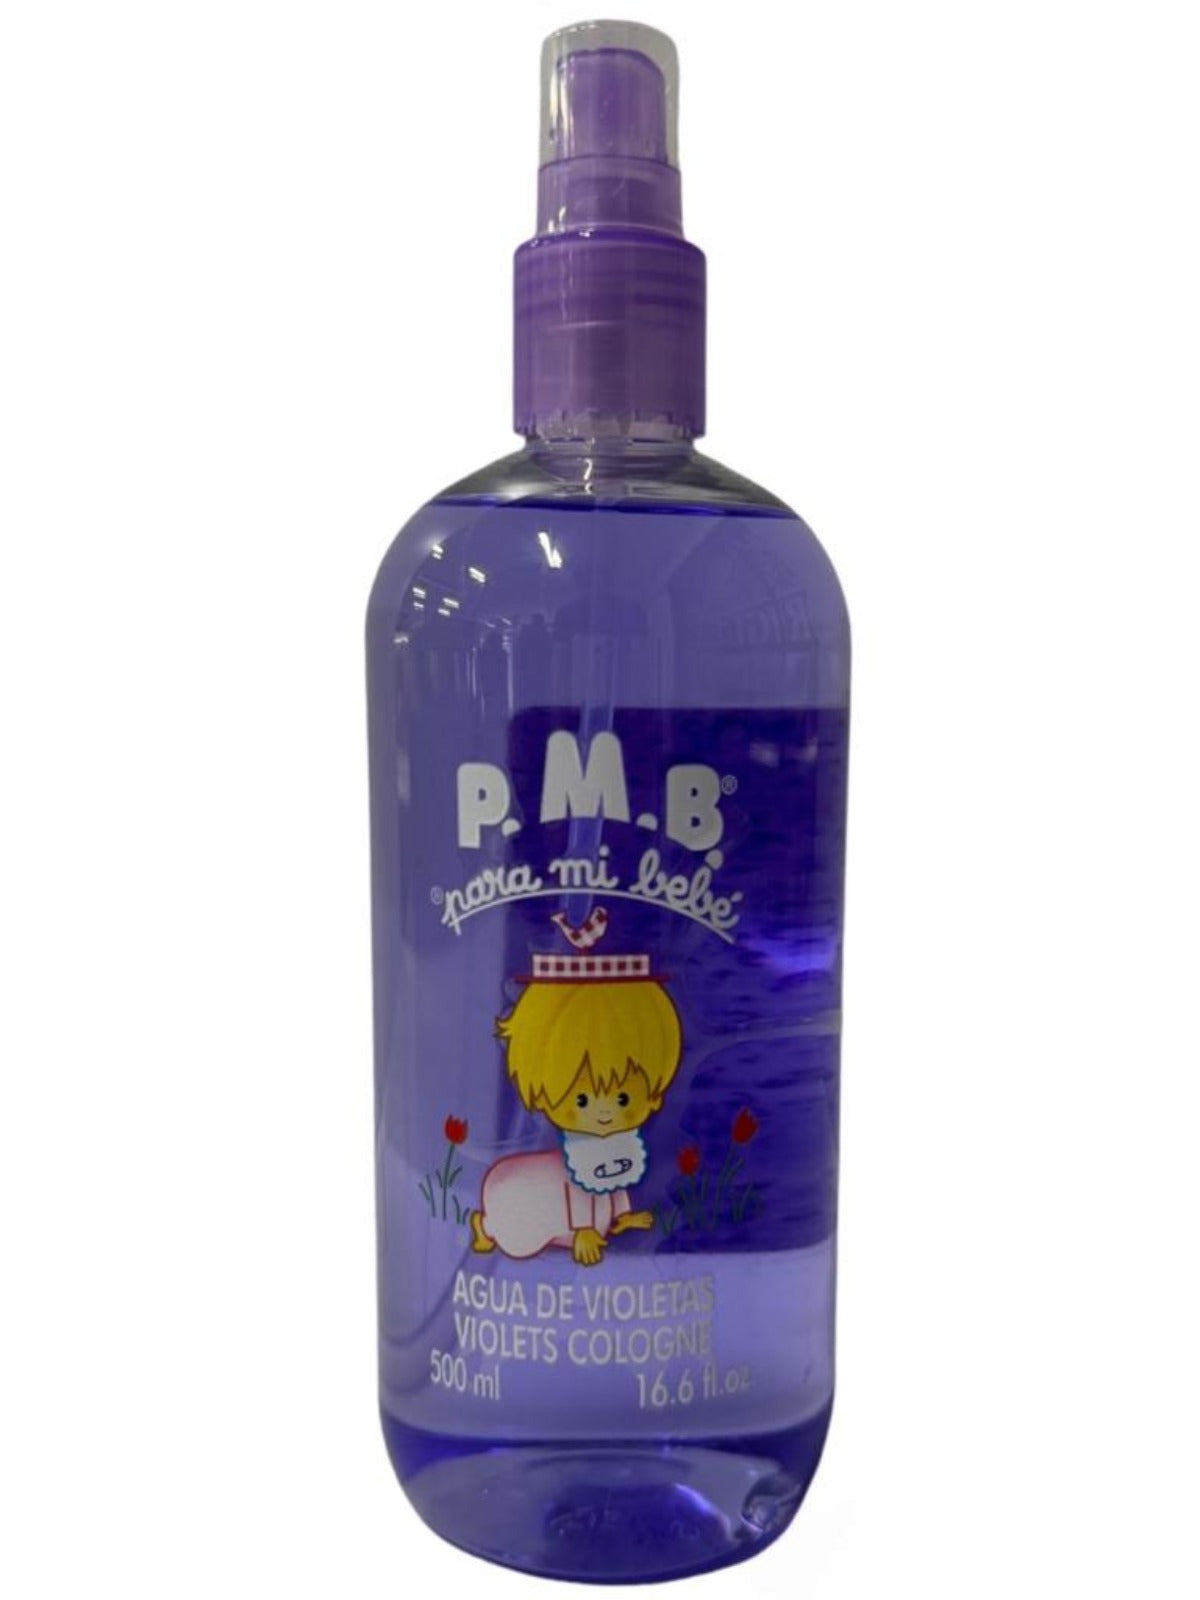 Para Mi Bebe Agua De Violetas Violets Cologne Spray 500ml